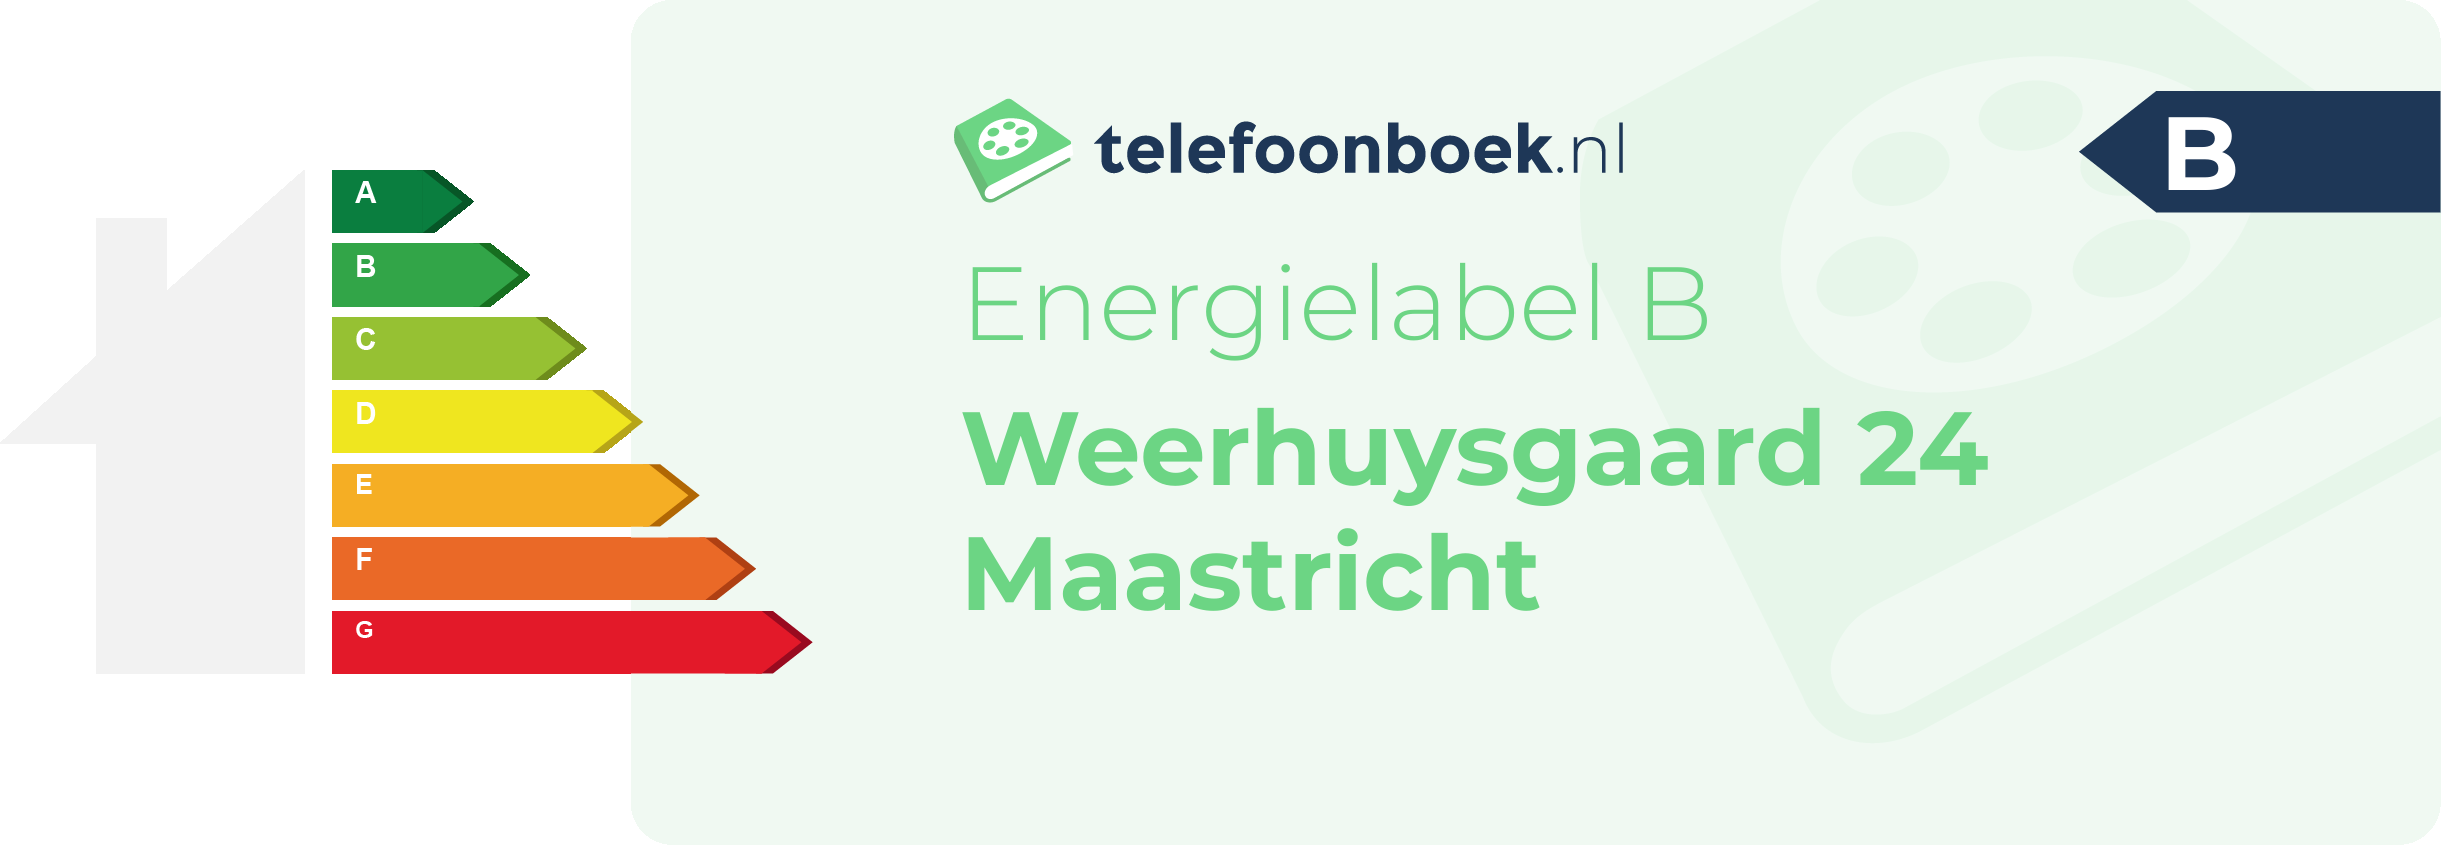 Energielabel Weerhuysgaard 24 Maastricht